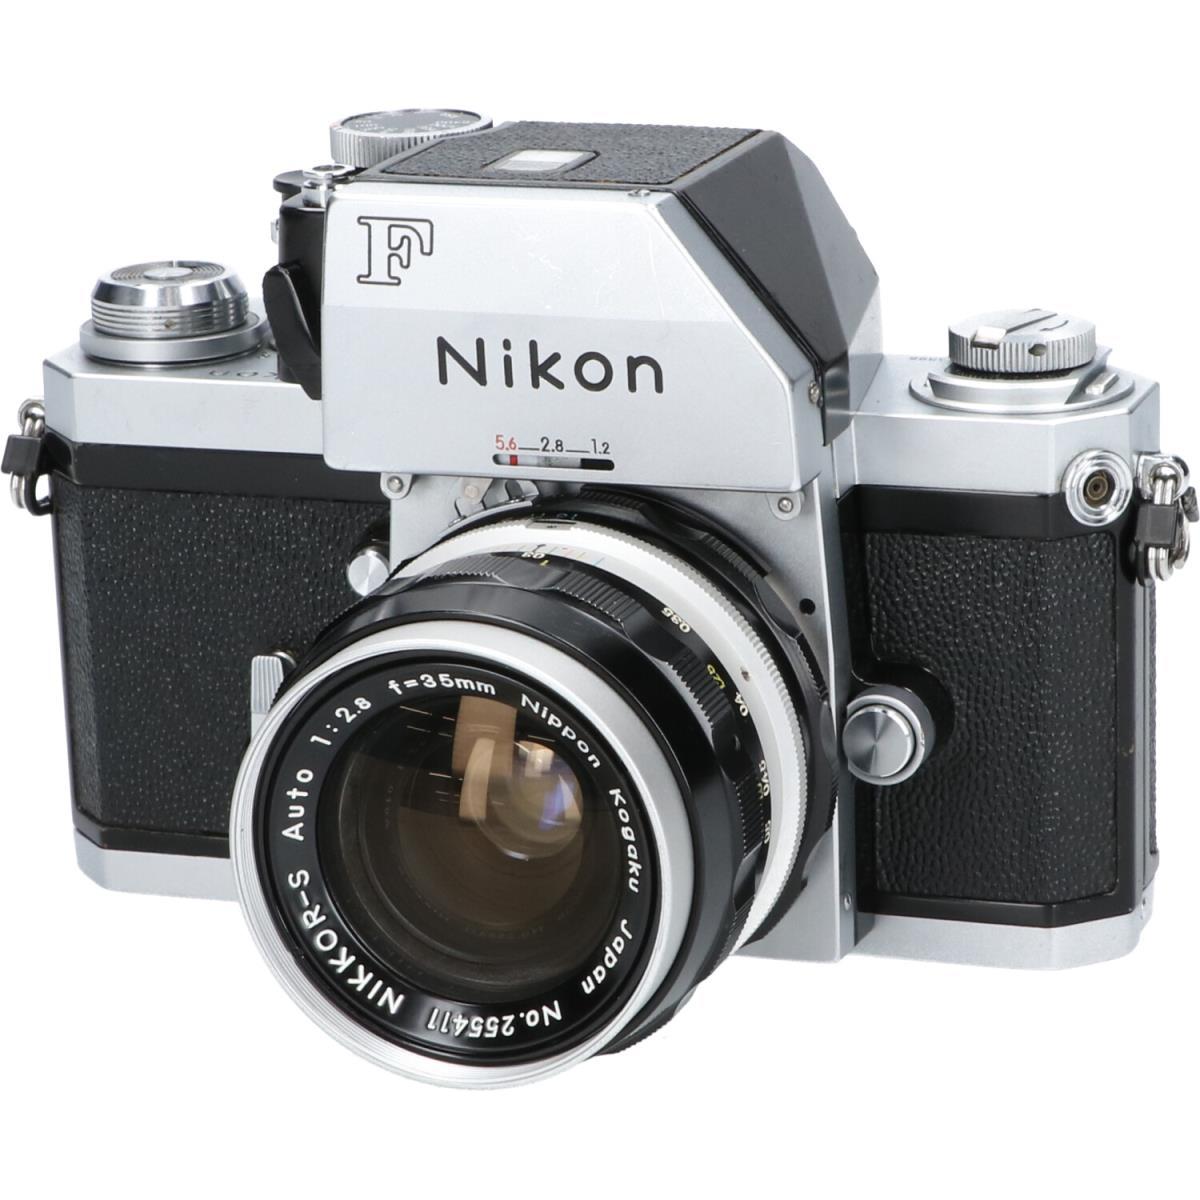 外観評価：使用によるスレが見受けられ、キズのある状態です。 レンズ内の状態評価：キズが見受けられますが、撮影結果に影響ないと思われる状態です。ブランド/メーカー:NIKON商品名:NIKON　FフォトミックFTN　35mm　F2．8付通称:フィルムカメラ商品ランク:中古品C型式:FフォトミックFTN 35/2.8付保証期間:1ヶ月詳細説明:外観評価：使用によるスレが見受けられ、キズのある状態です。 レンズ内の状態評価：キズが見受けられますが、撮影結果に影響ないと思われる状態です。 【保証について】 保証期間内に日本国内で、取扱説明書および注意書きに従った正常な使用状態で故障が発生した場合に返品対応させていただく返品保証です。 修理対応は行っておりませんのでご了承ください。 ※記載や画像にない付属品はお付けできません。 また、付属品の状態は商品ランクの評価には含まれておりません。 【備考】 ・外観全体にスレ、キズがあり、やや使用感が強い個体です。 ・ファインダー接眼面に拭きキズが多くあります。また、プリズムの合わせ目に腐食が少しある他、点カビがやや見受けられます。 ・スクリーンはA型です。 ・ミラーに小さな点キズがあります。 ・レンズ前玉の内側に薄い拭きキズがややあります。 【付属品】 フロントキャップ/ソフトシャッターレリーズAR-1在庫店舗:名古屋本店 本館